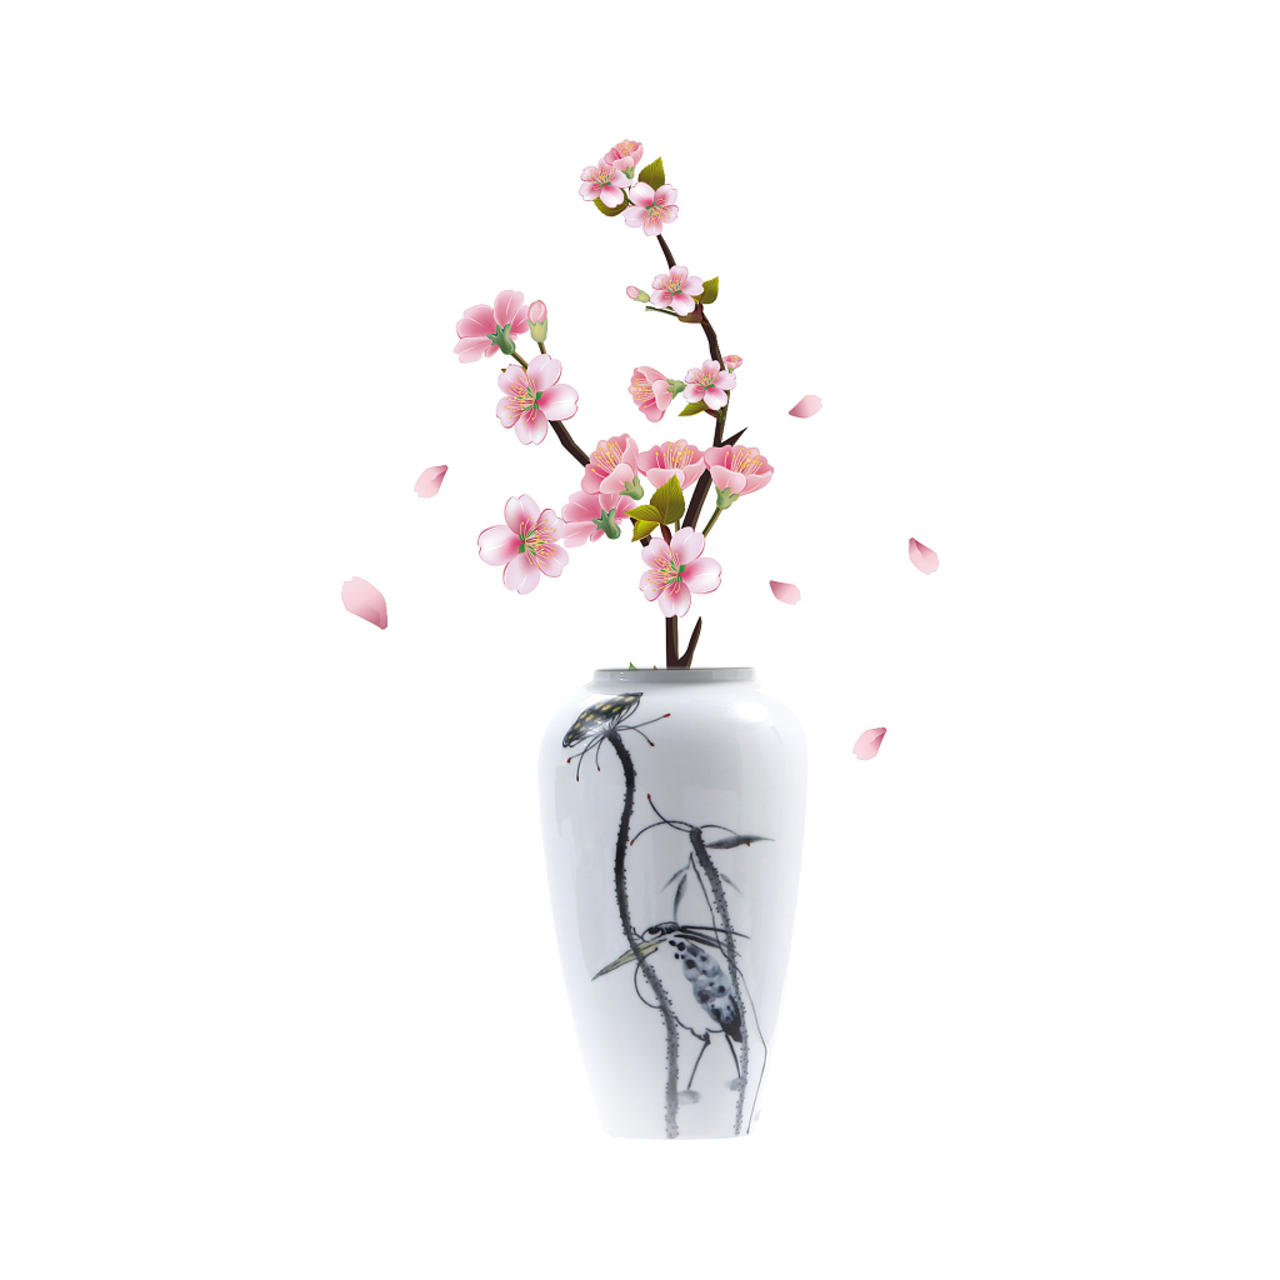 彩色手绘卡通瓷器花瓶桃花树枝雨水节气元素png素材psd免费下载 图星人